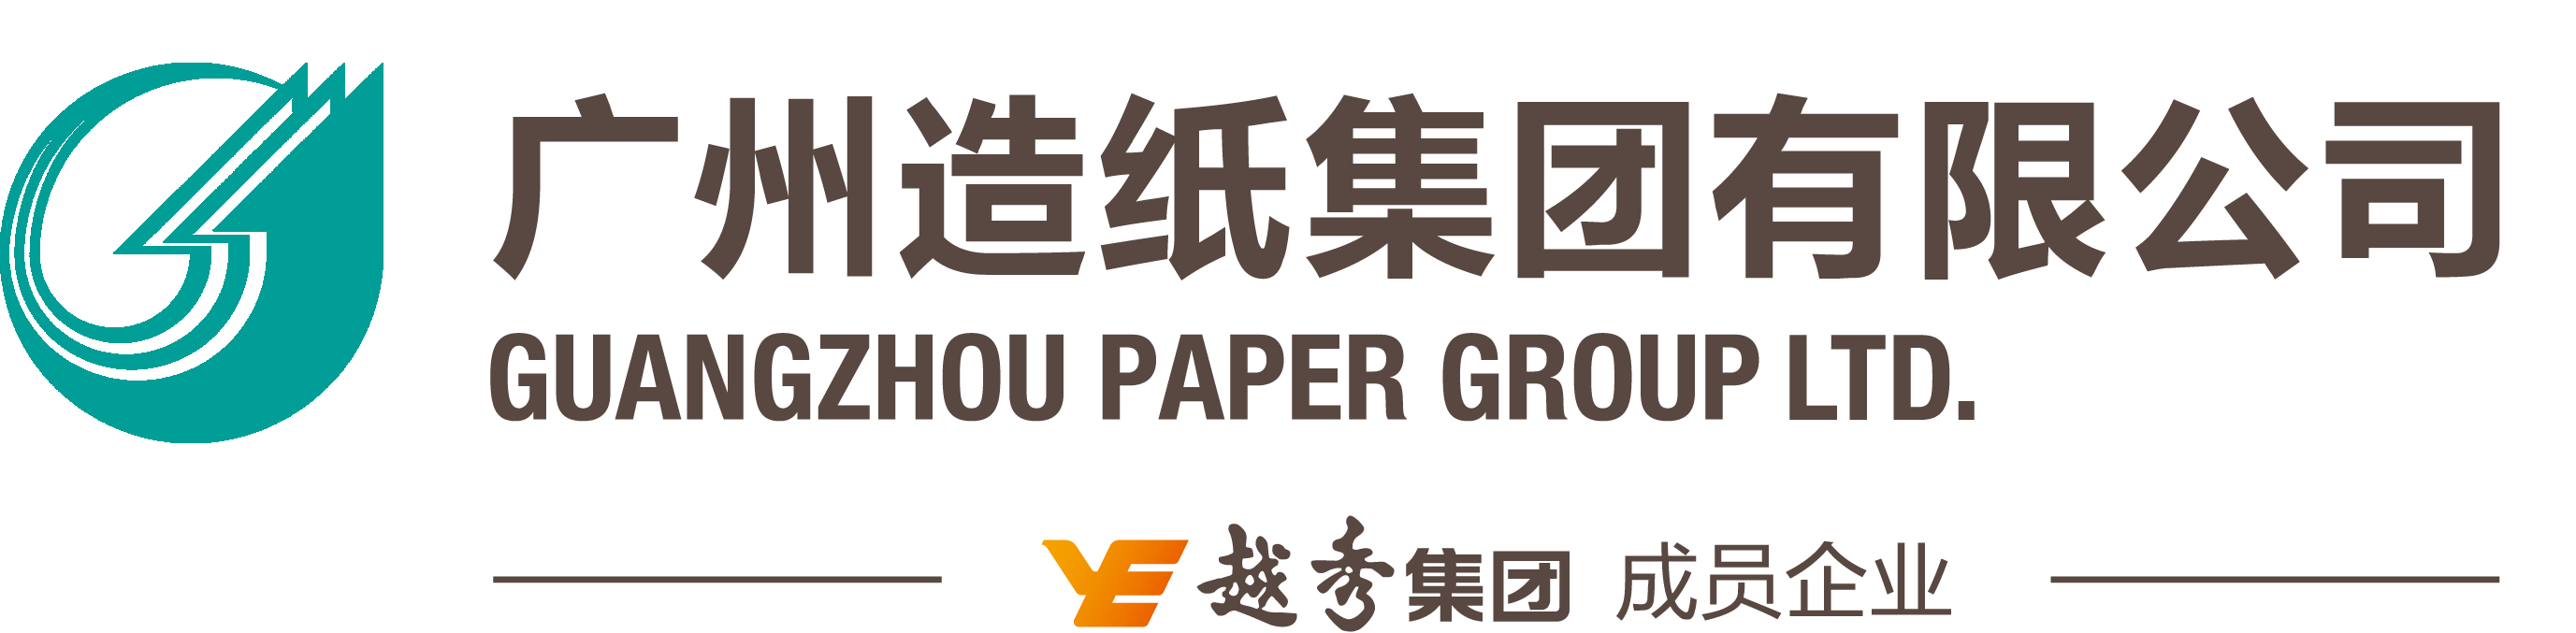 广州造纸集团有限公司